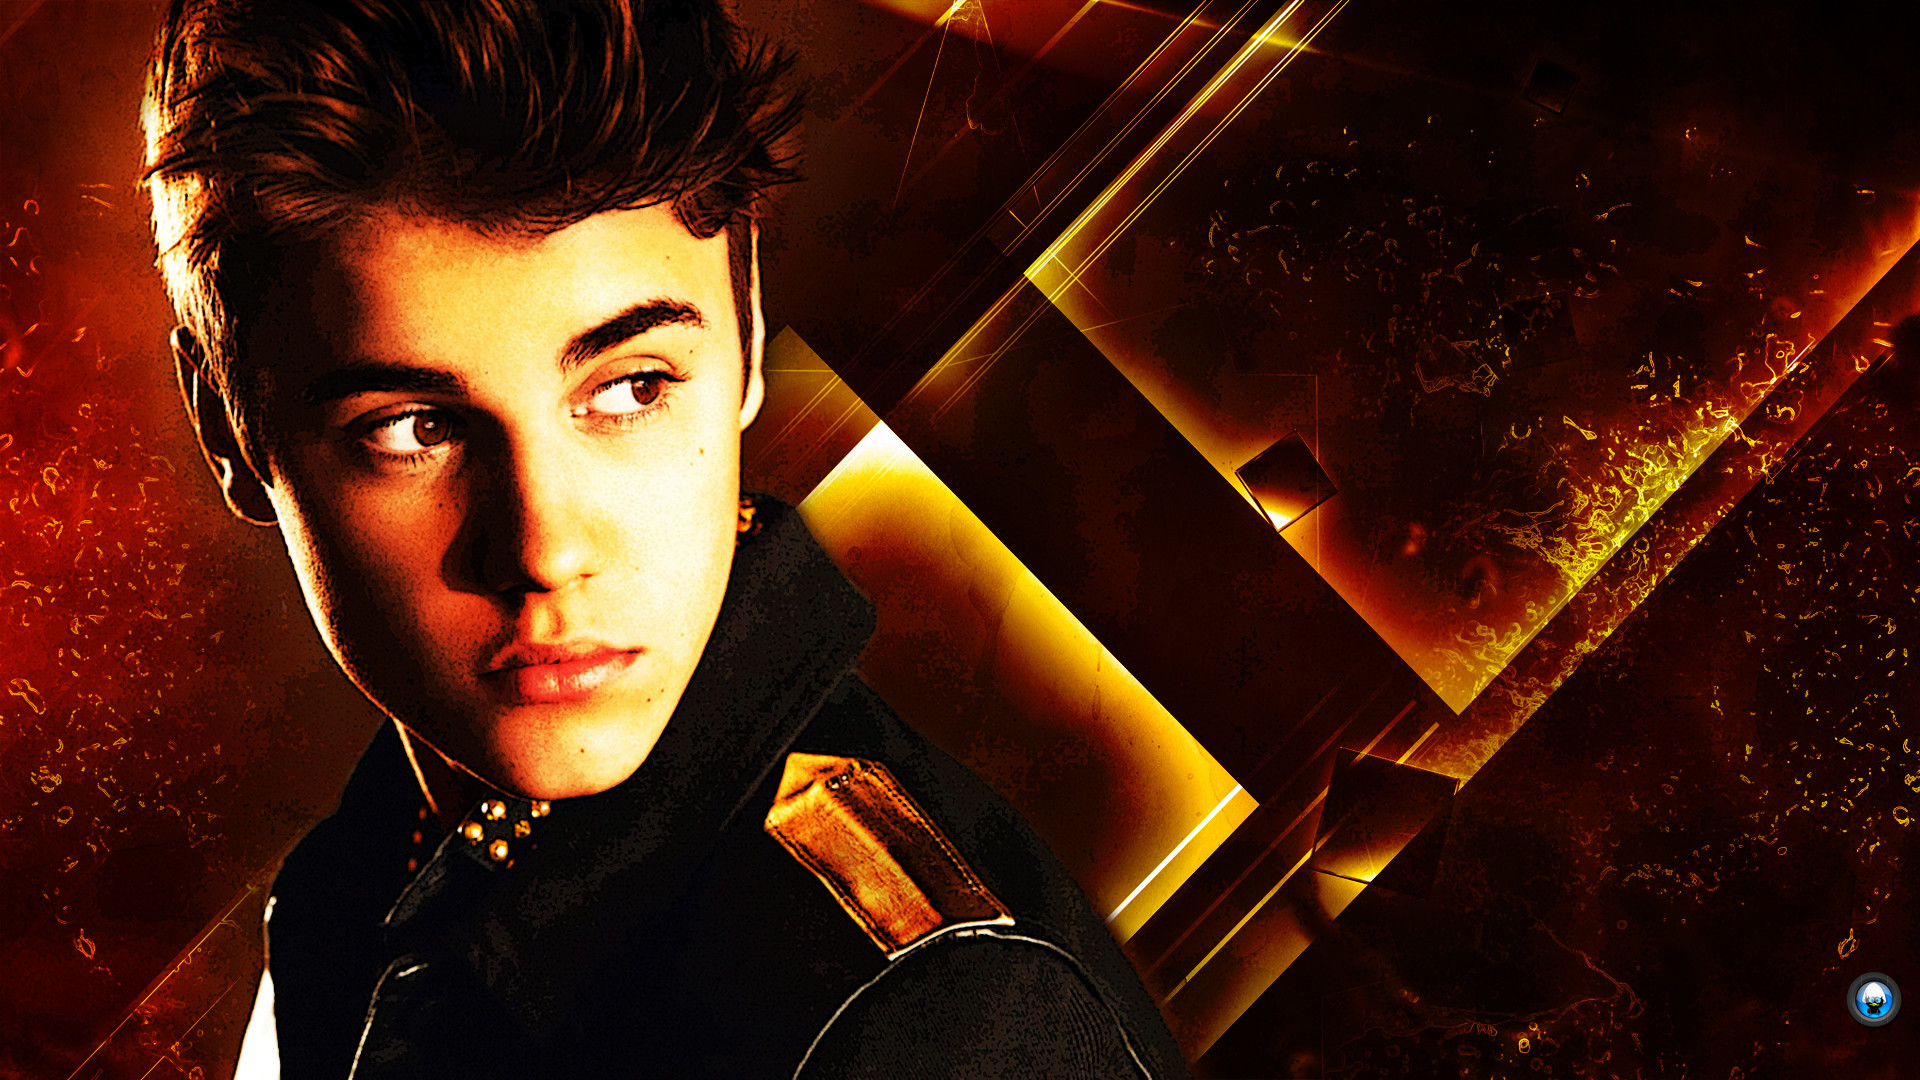 Justin Bieber Hd Wallpapers 2014, Qc878 Full Hd Wallpapers - Justin Bieber Background Hd - HD Wallpaper 